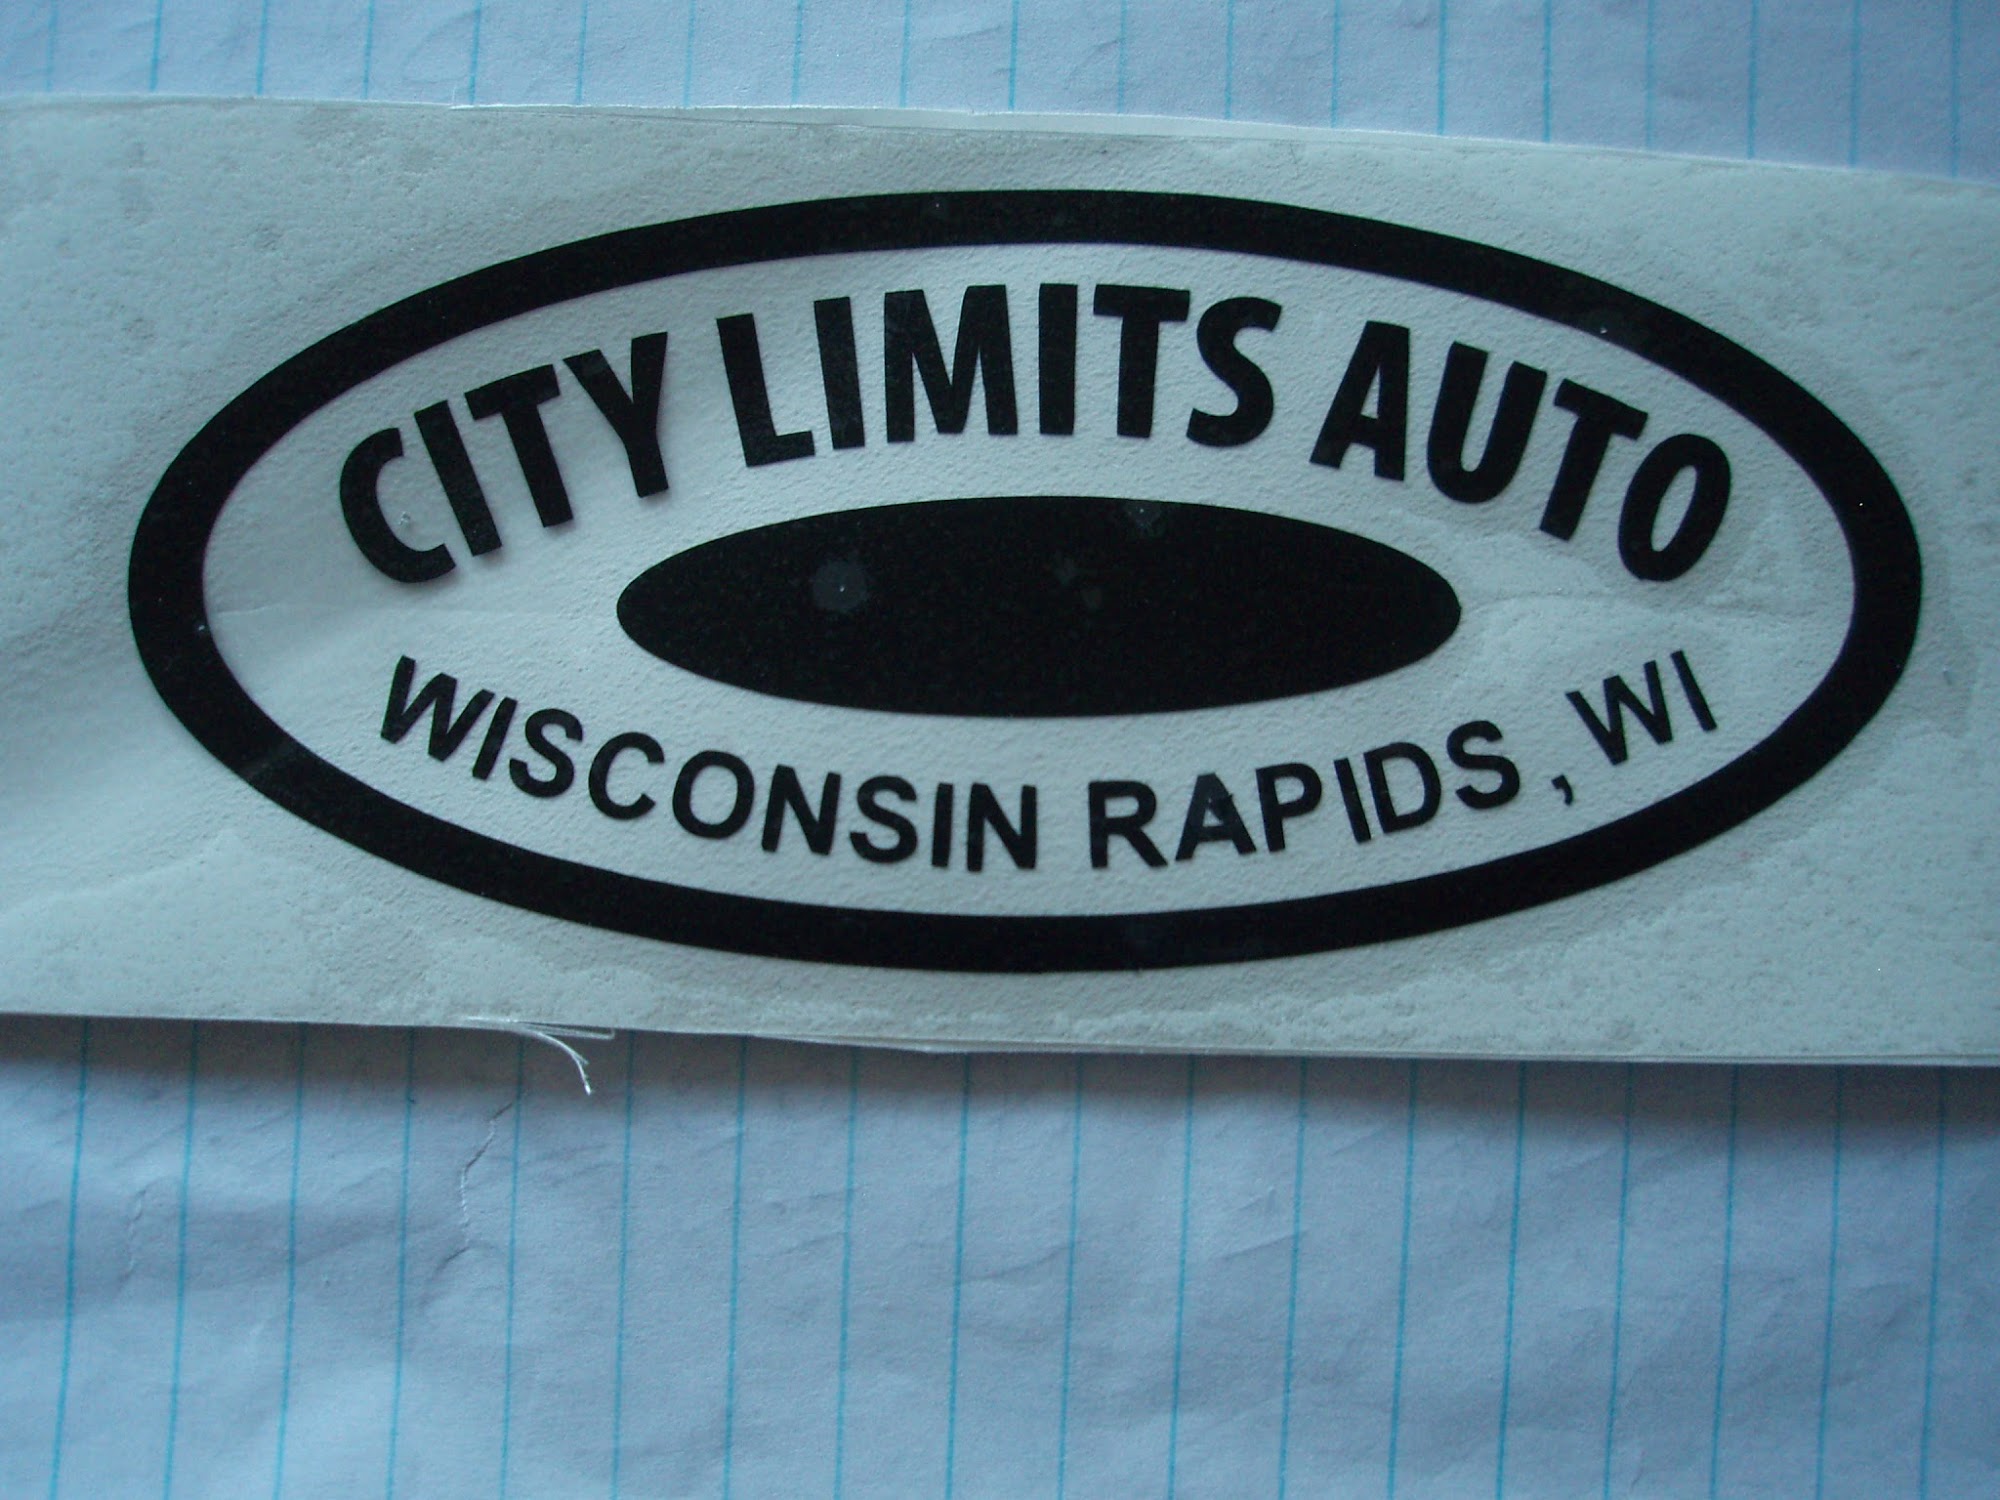 City Limits Auto